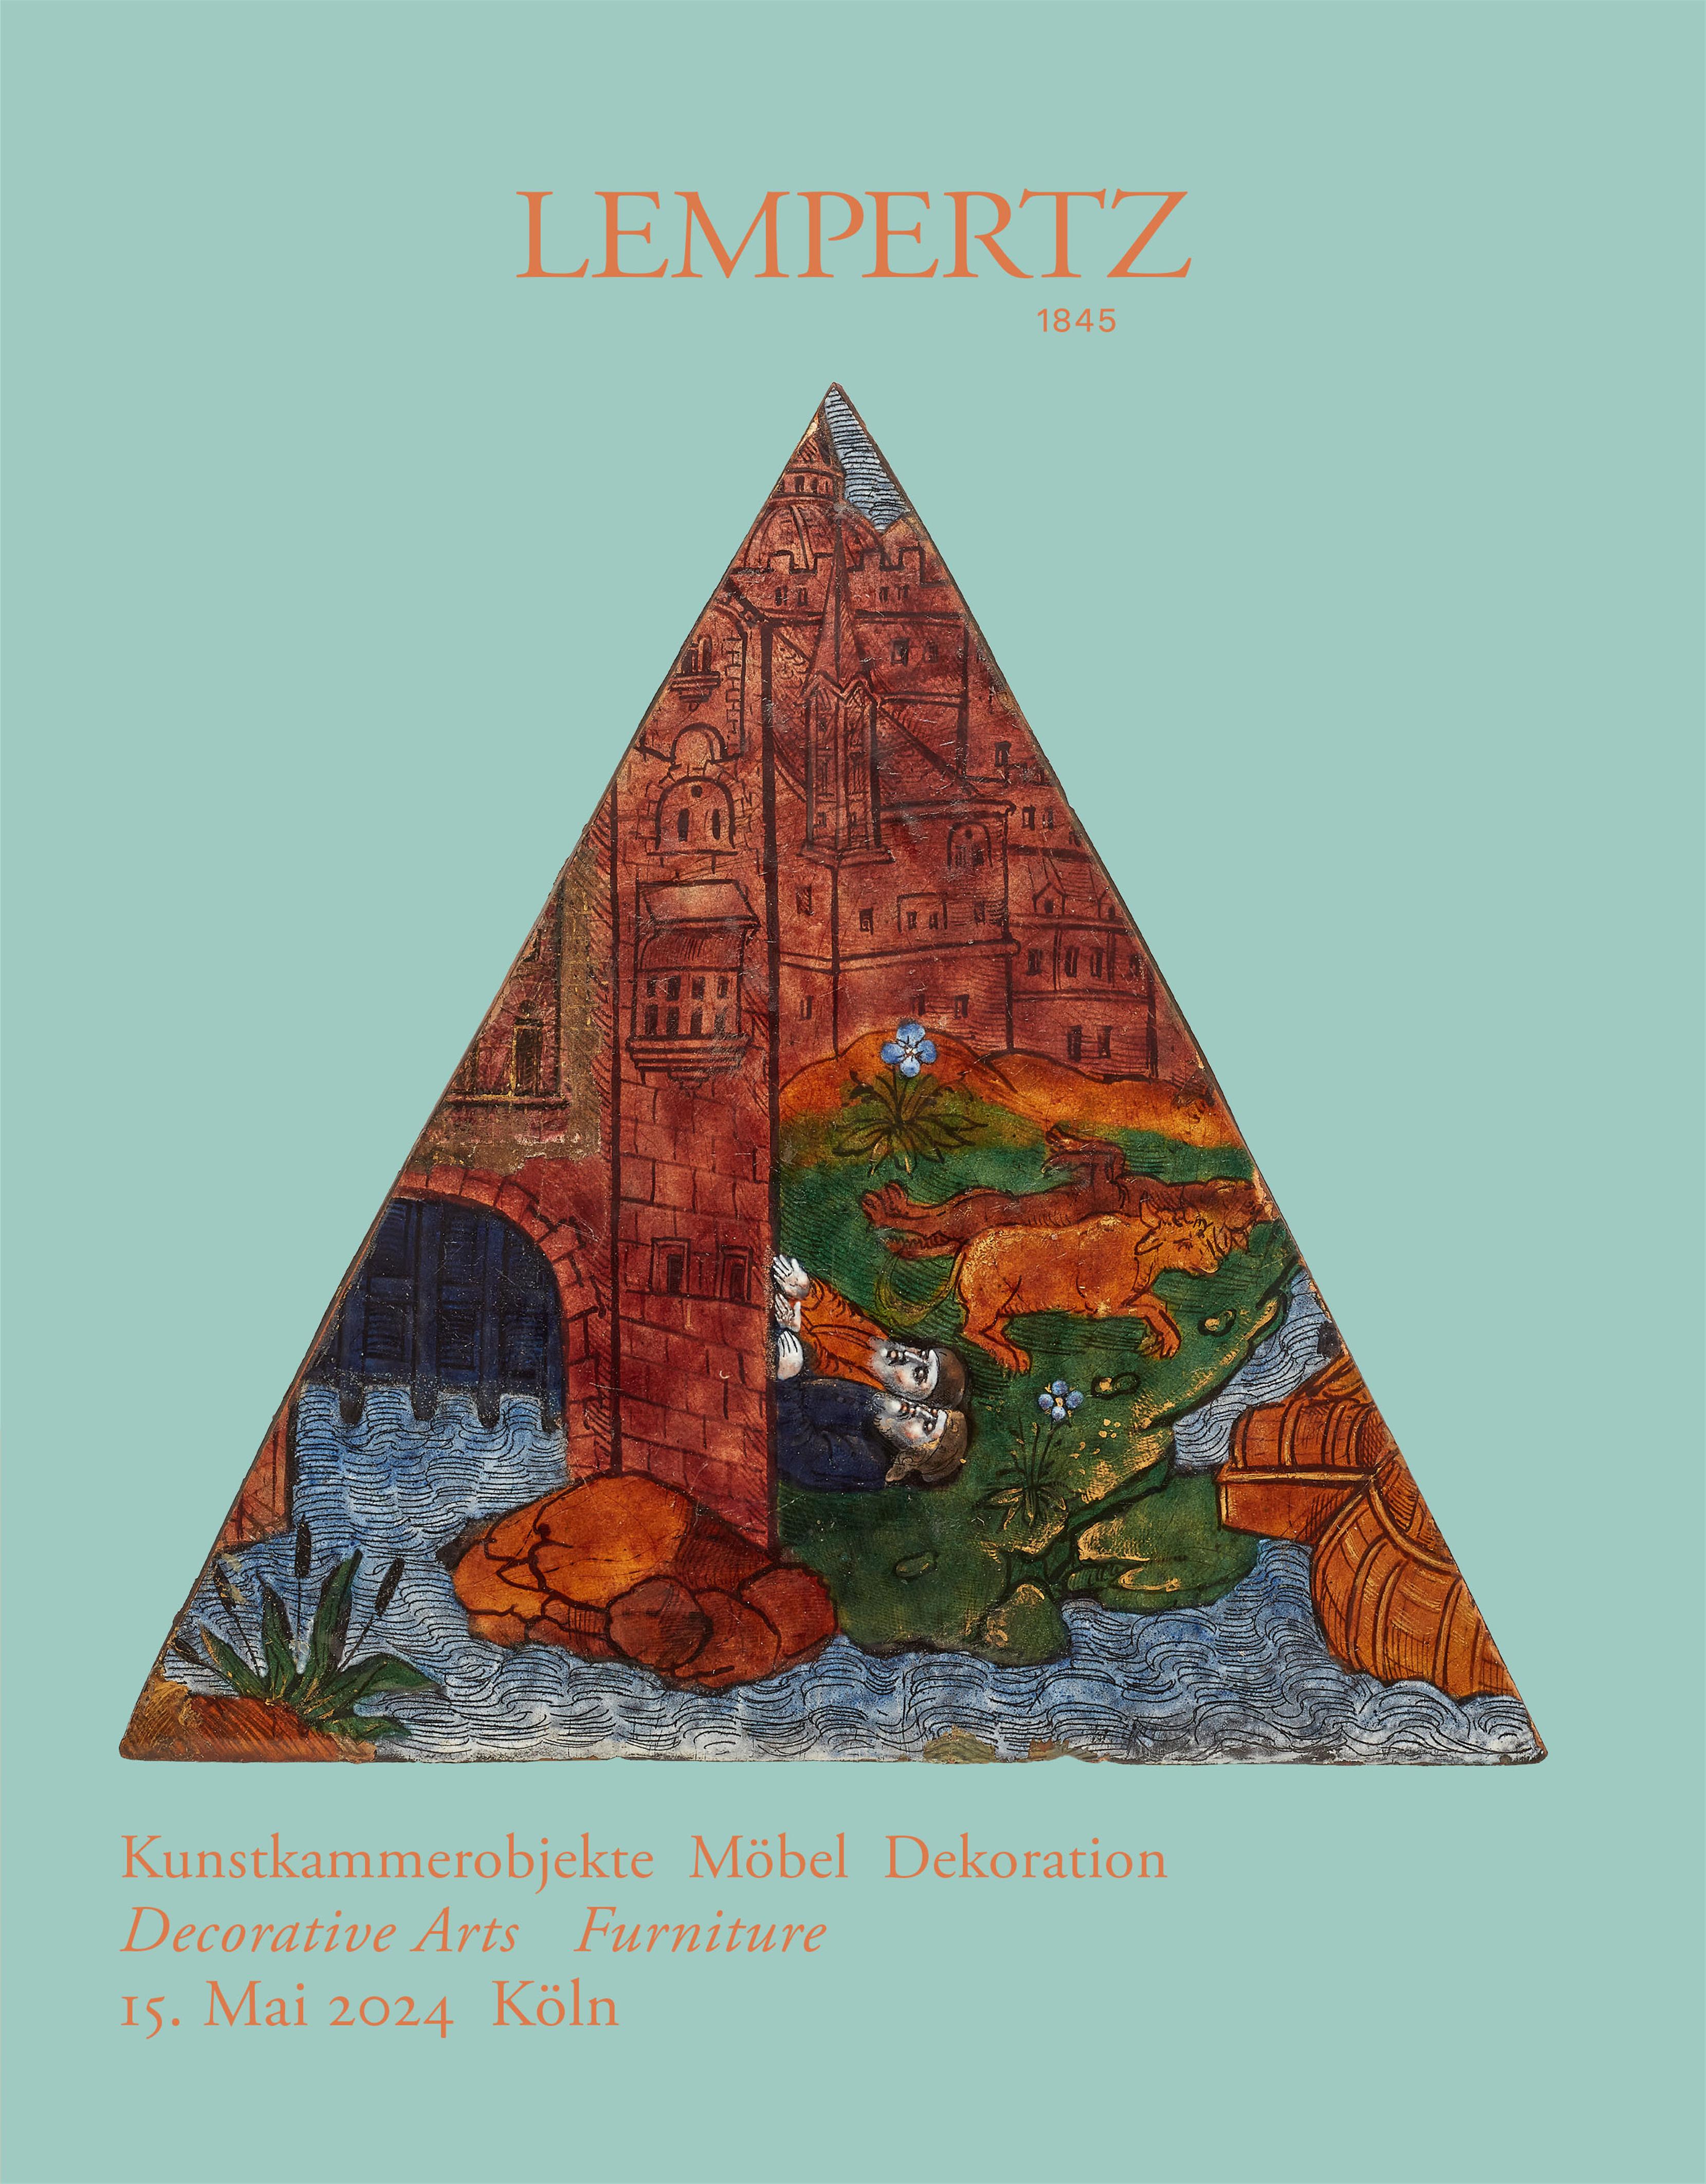 Auktionskatalog - Kunstkammerobjekte Möbel Dekoration - Online Katalog - Auktion 1244 – Ersteigern Sie hochwertige Kunst in der nächsten Lempertz-Auktion!